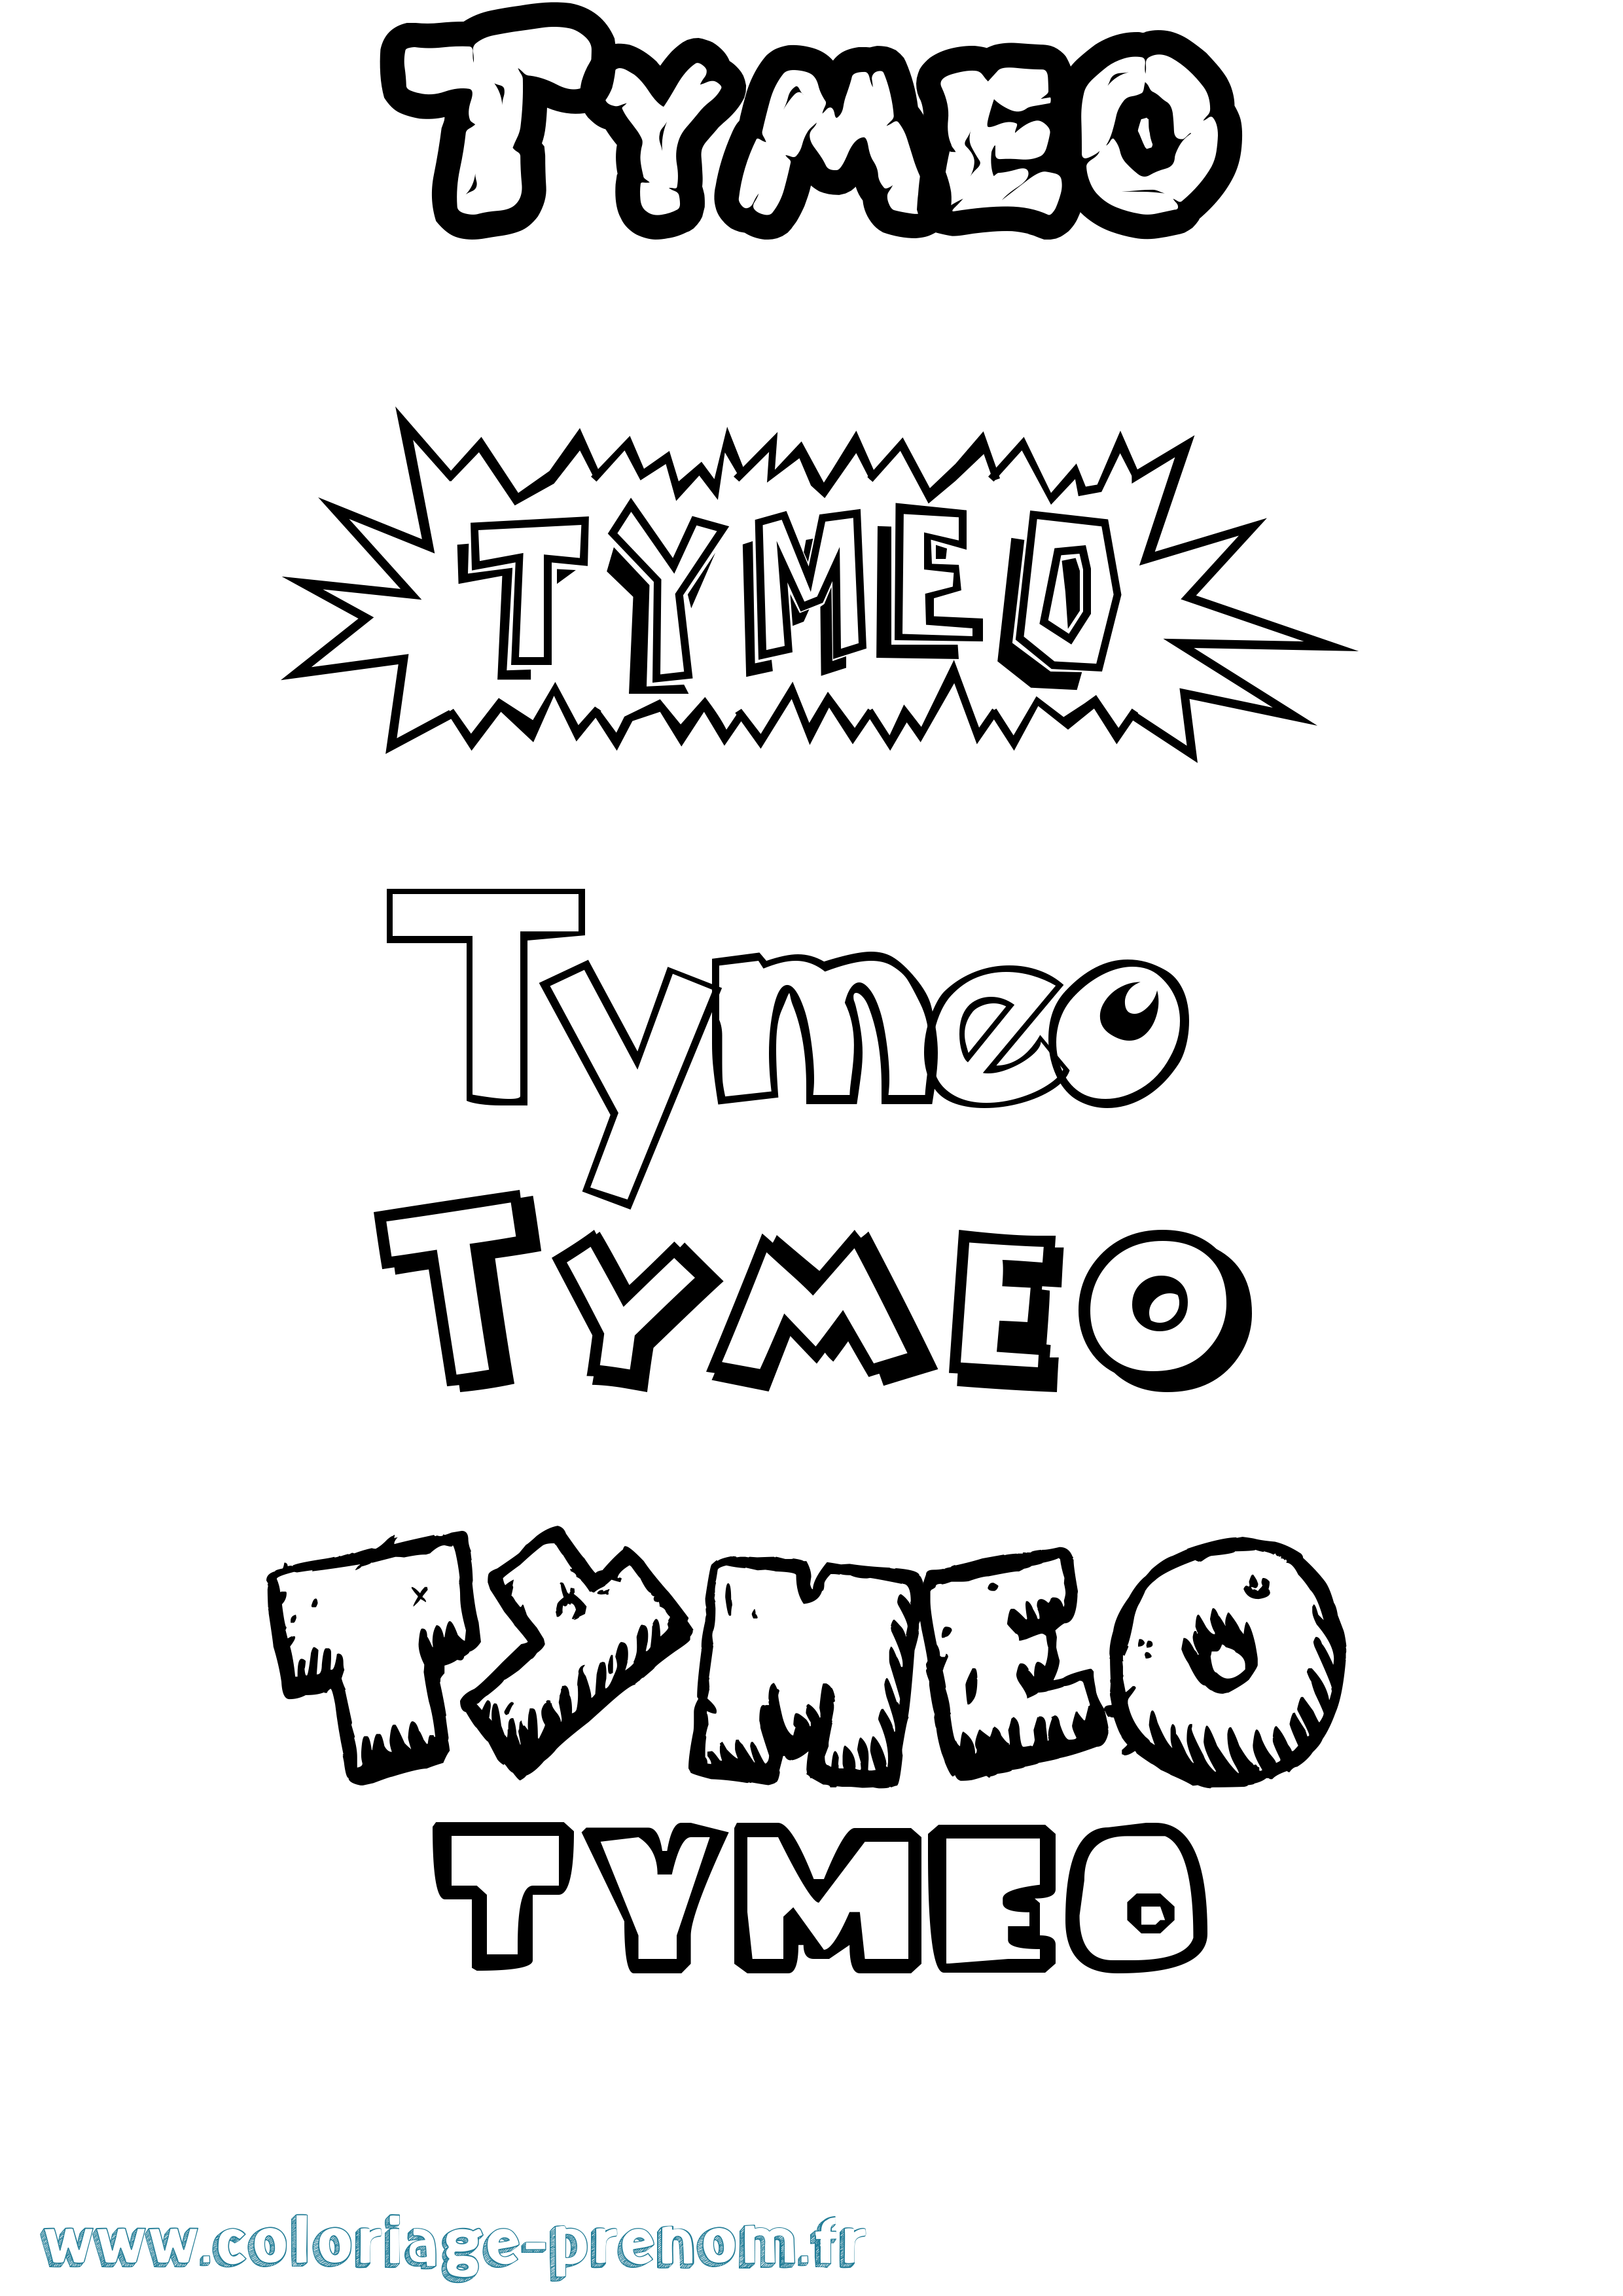 Coloriage prénom Tymeo